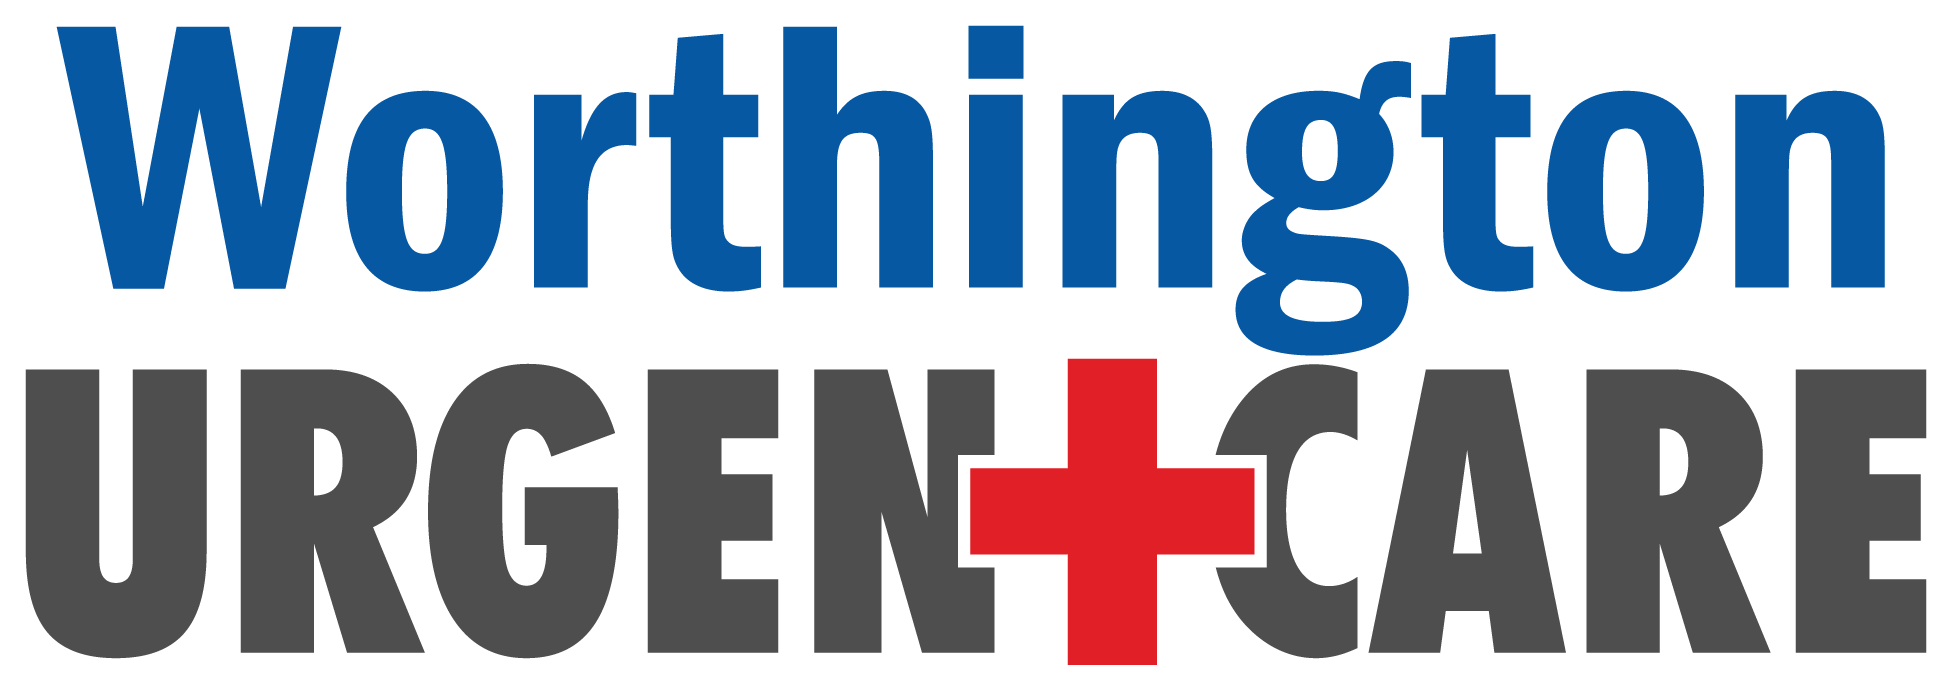 Worthington Urgent Care logo